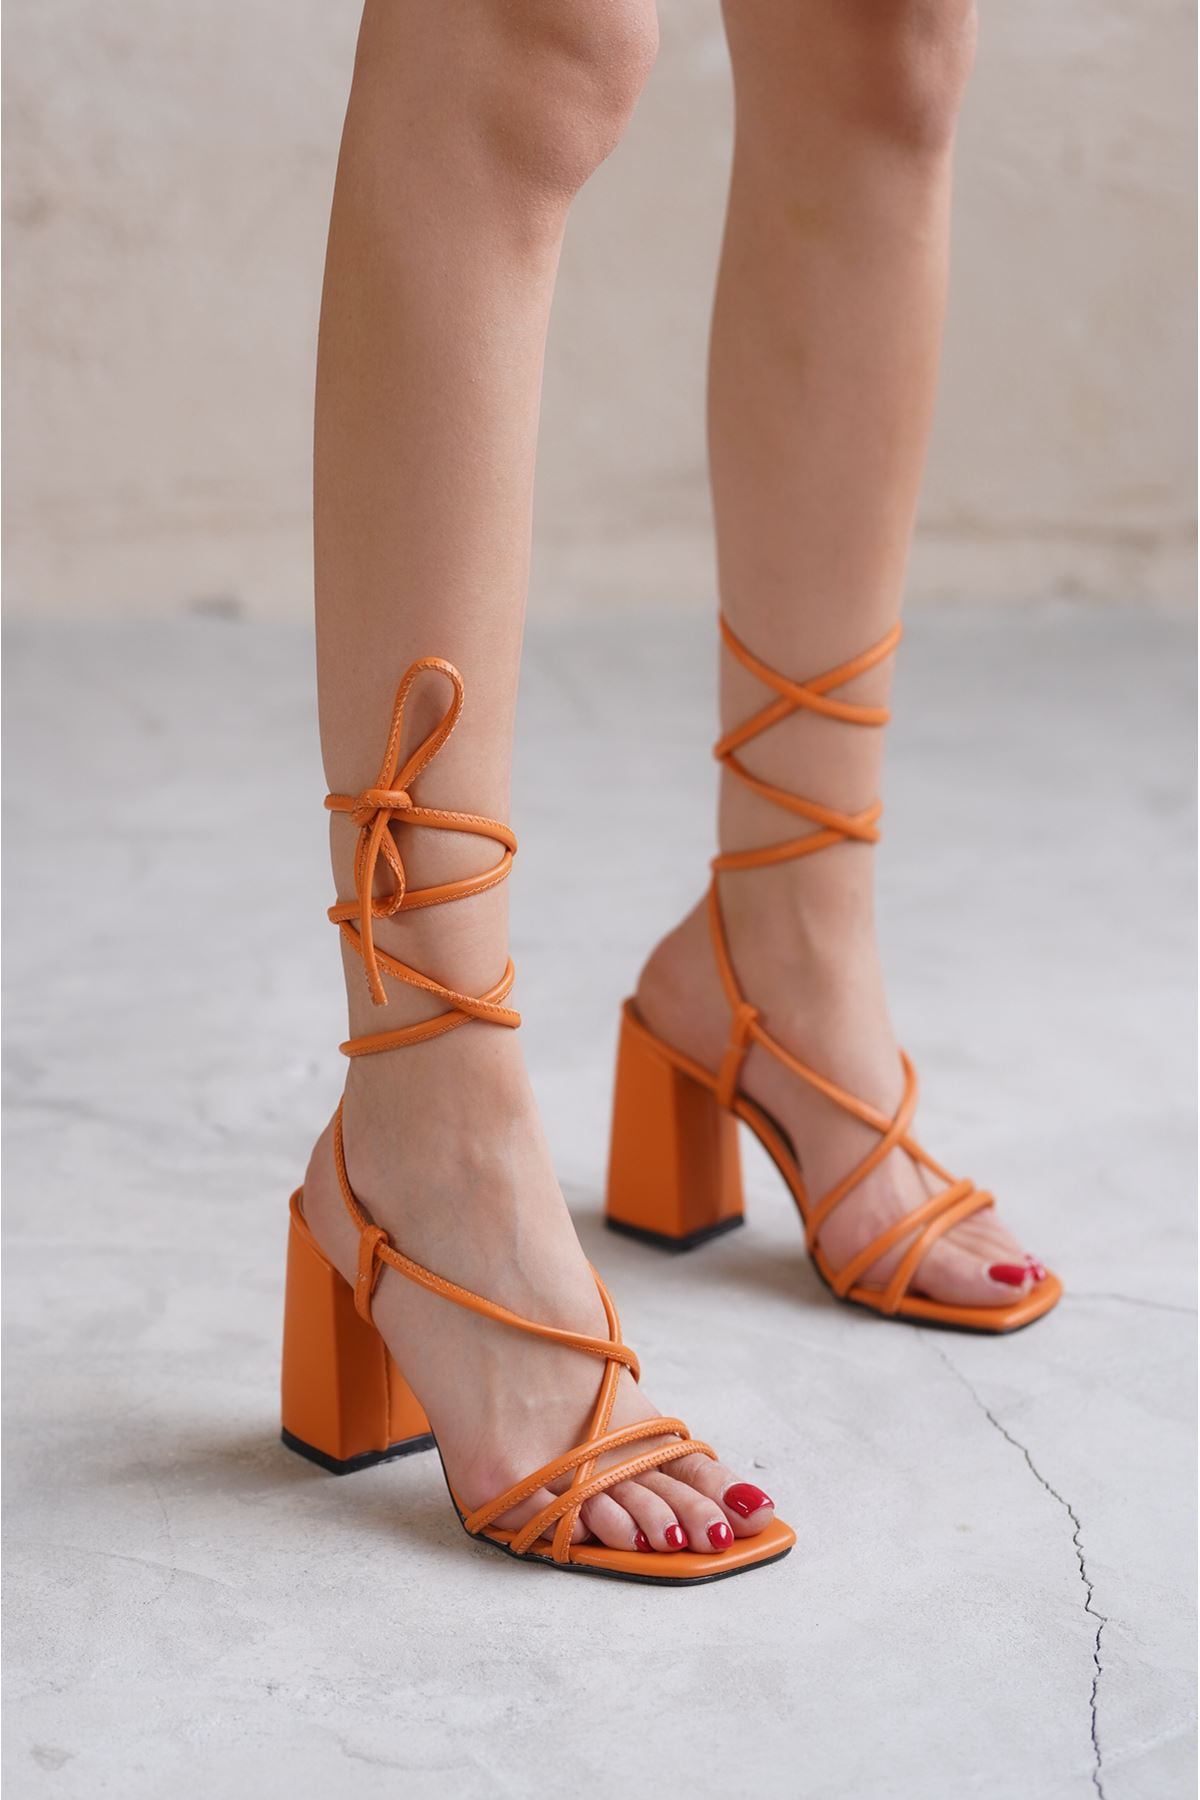 Kadın Bern Topuklu Ayakkabı - Turuncu